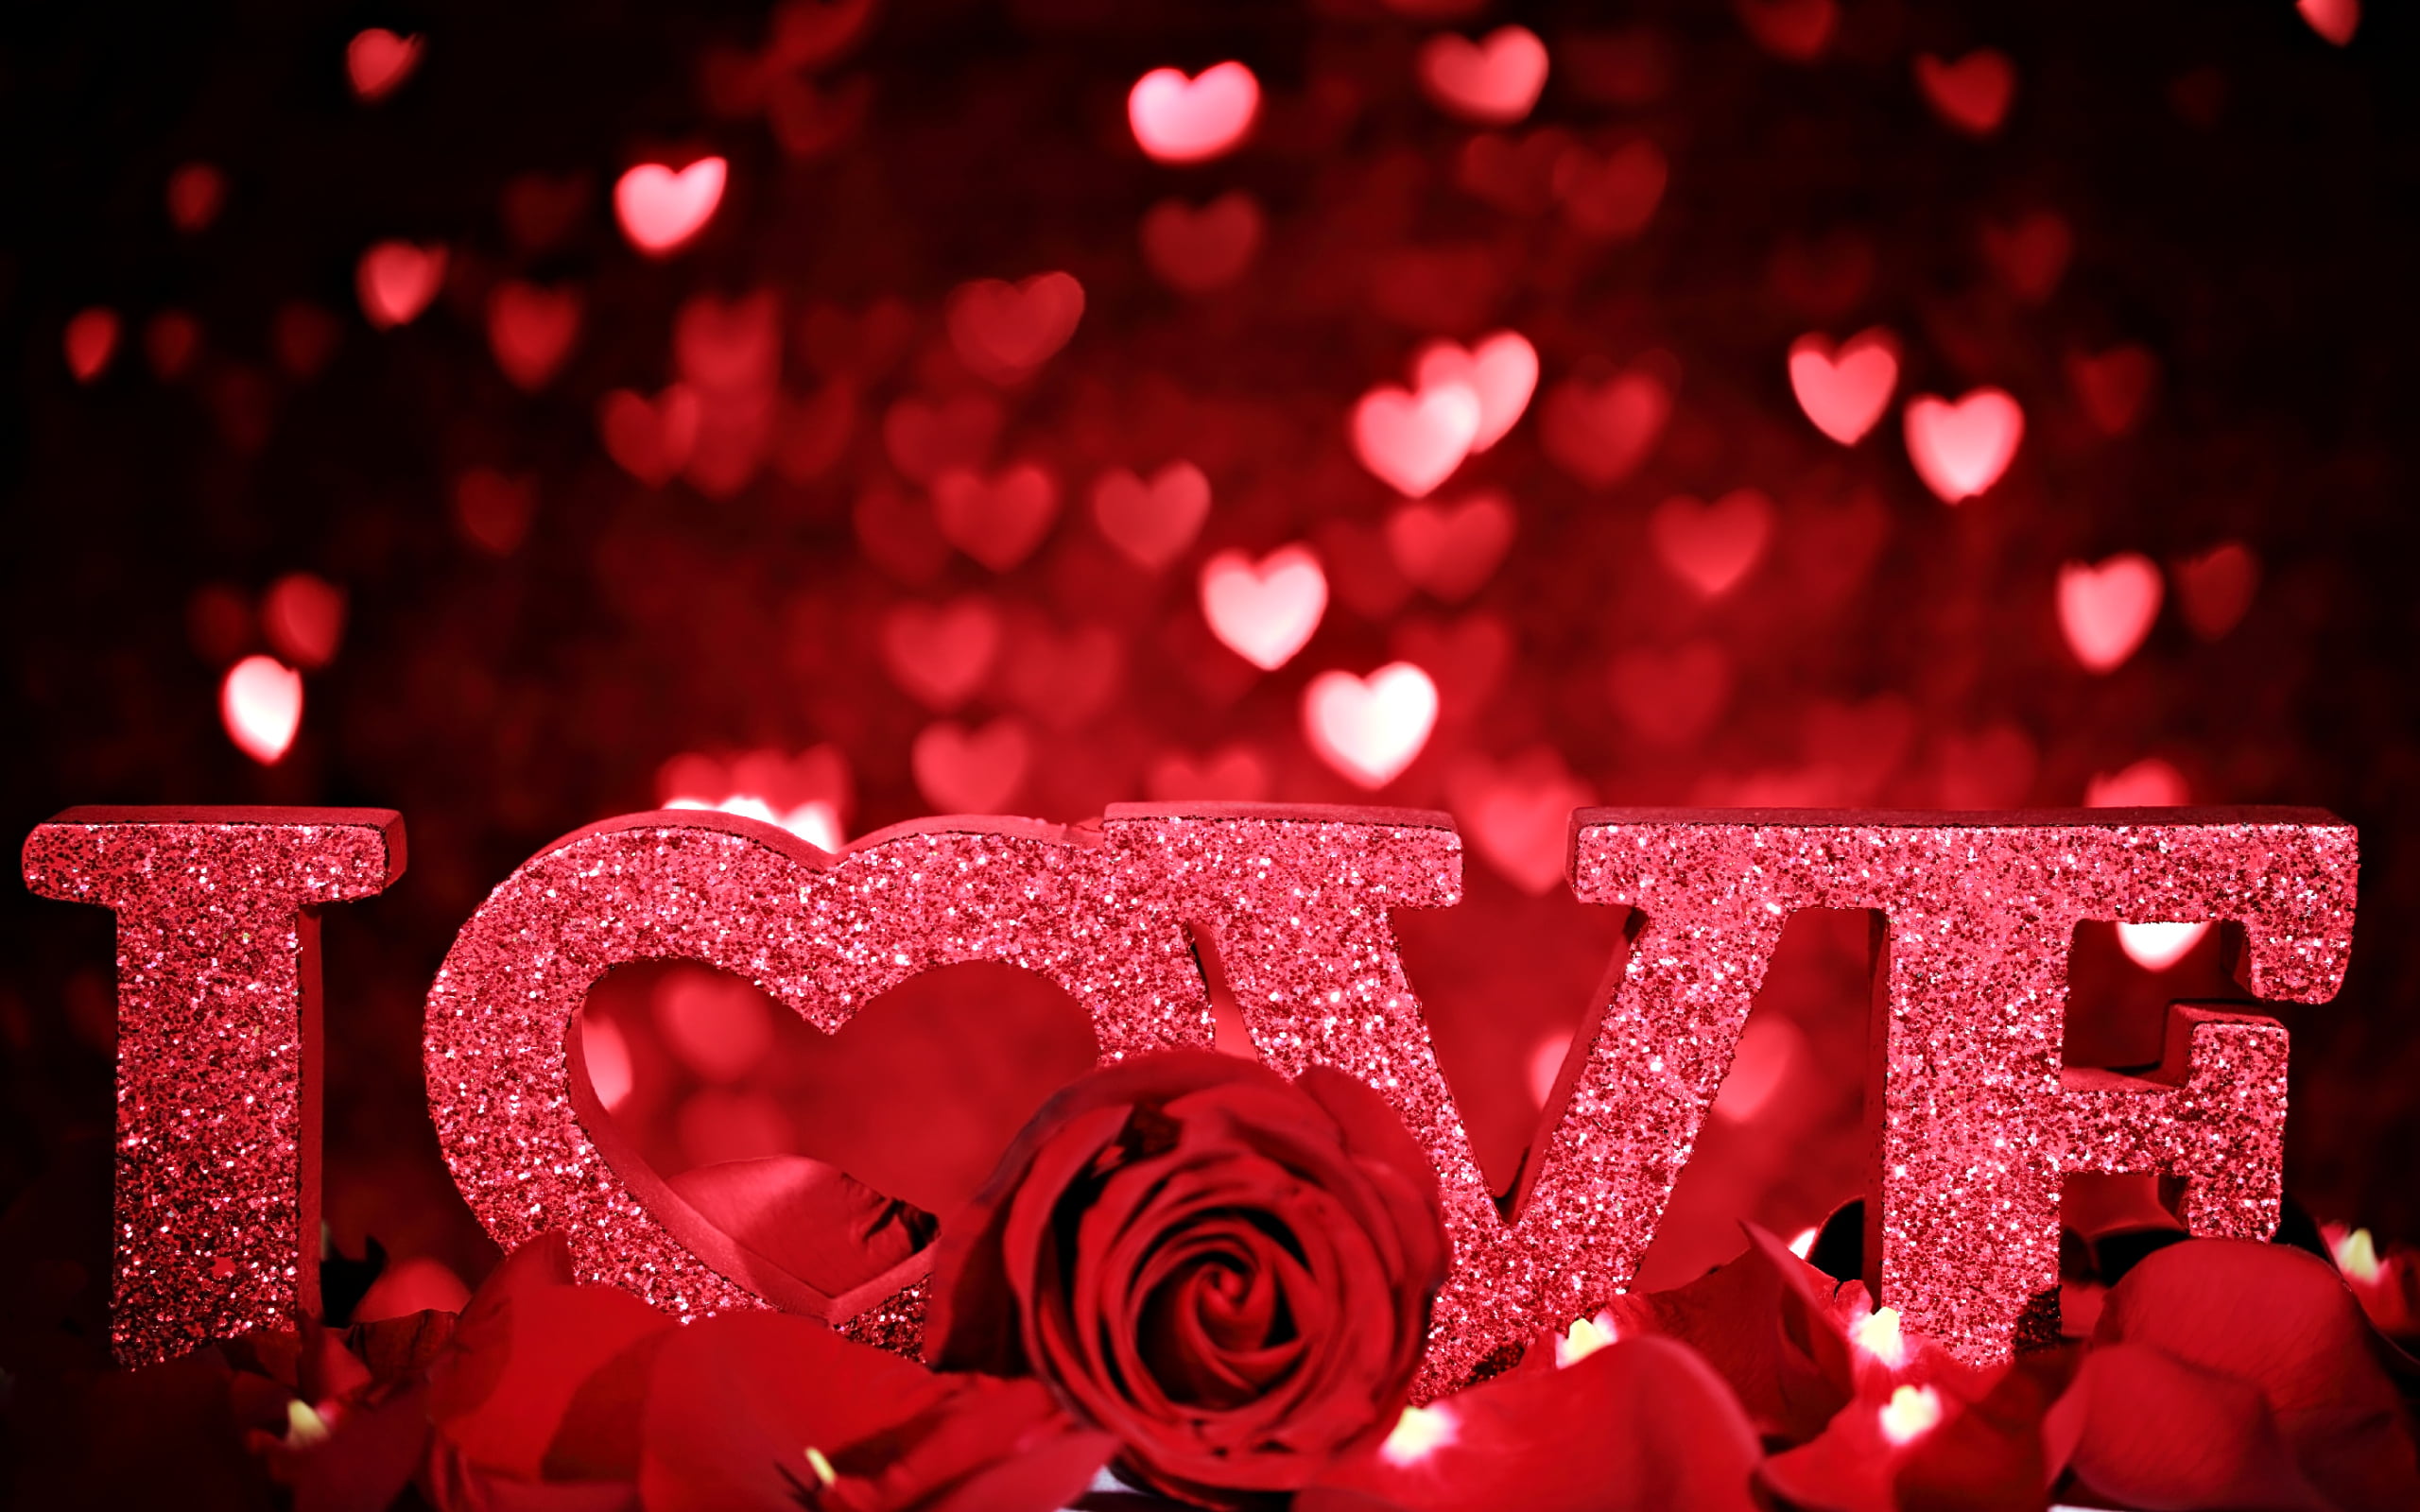 red i love freestanding letter, flowers, heart, rose, celebration